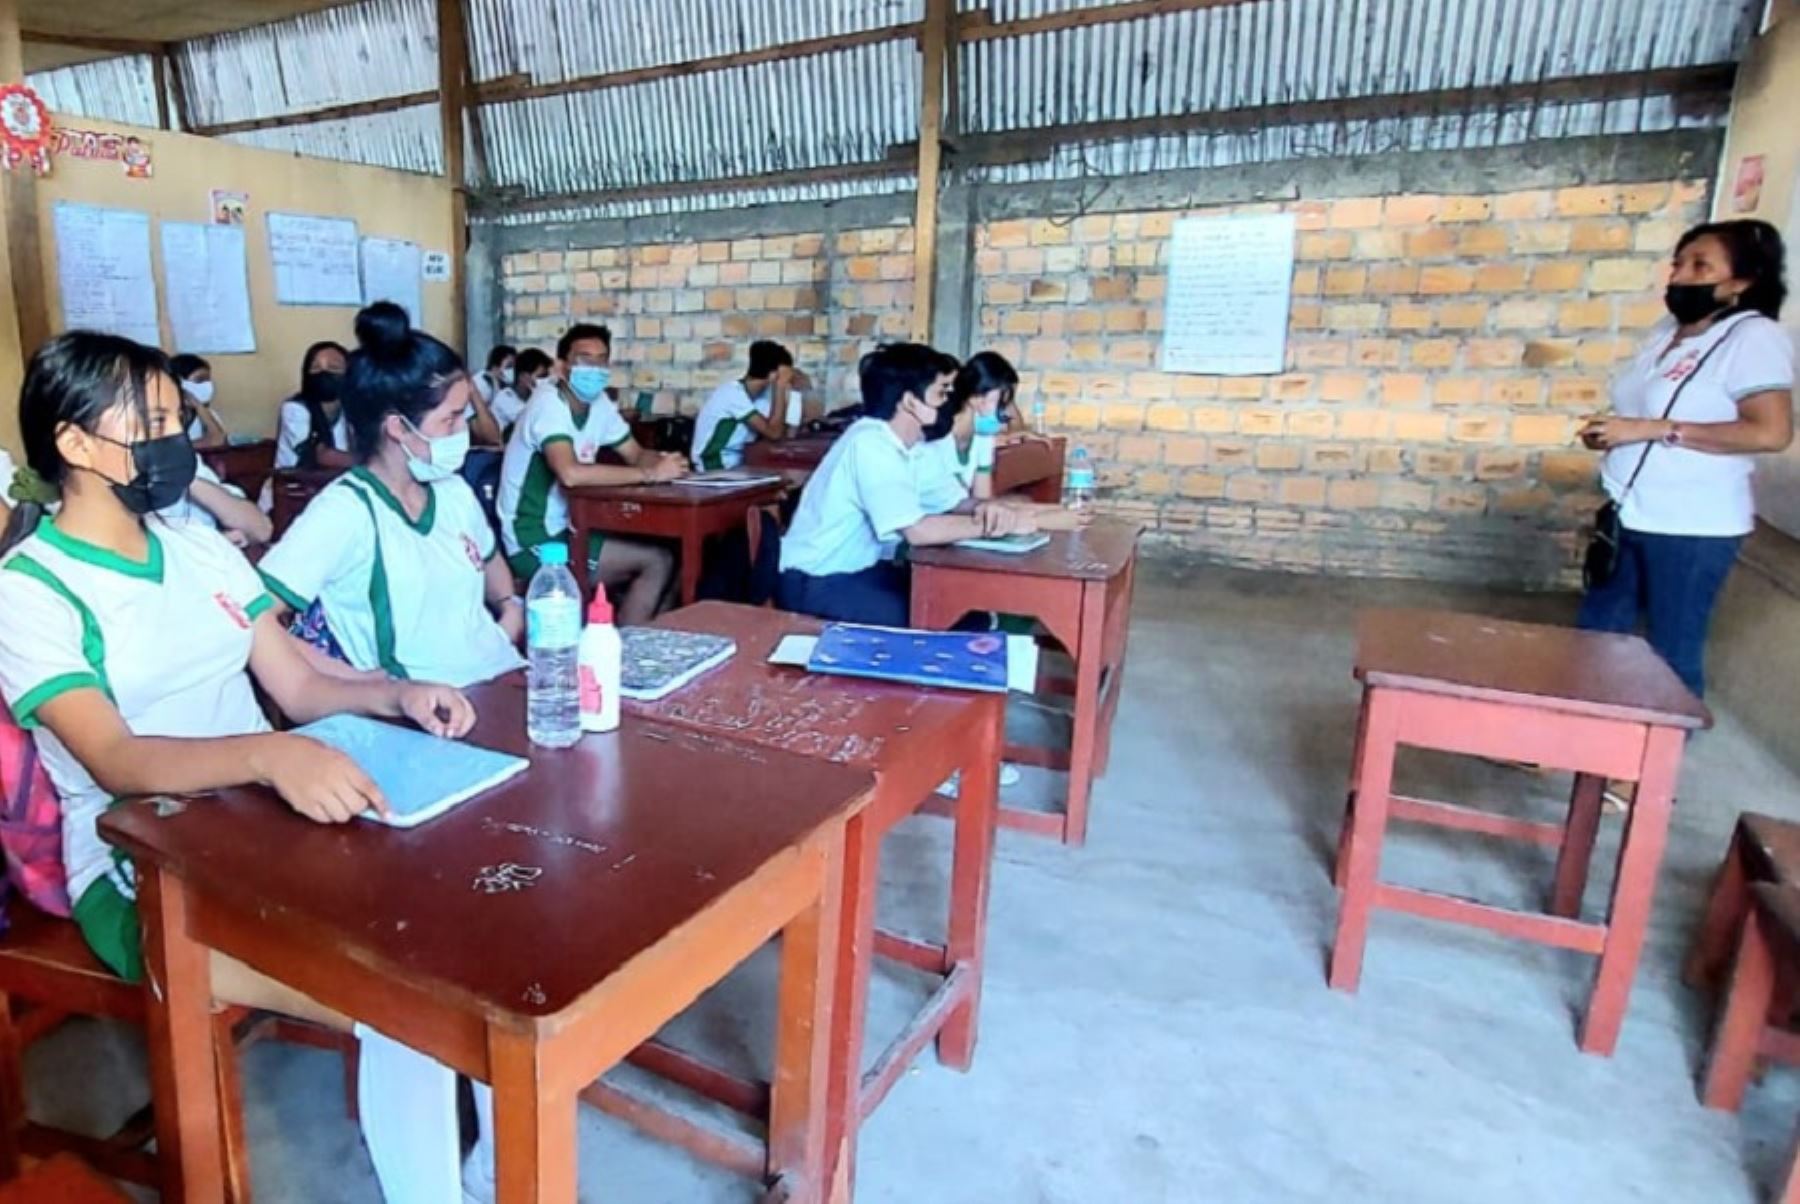 Varios centros educativos de la ciudad de Iquitos han suspendido temporalmente las clases presenciales debido a que alumnos y docentes dieron positivo a la nueva variante del covid-19, informó la Dirección Regional de Educación de Loreto.